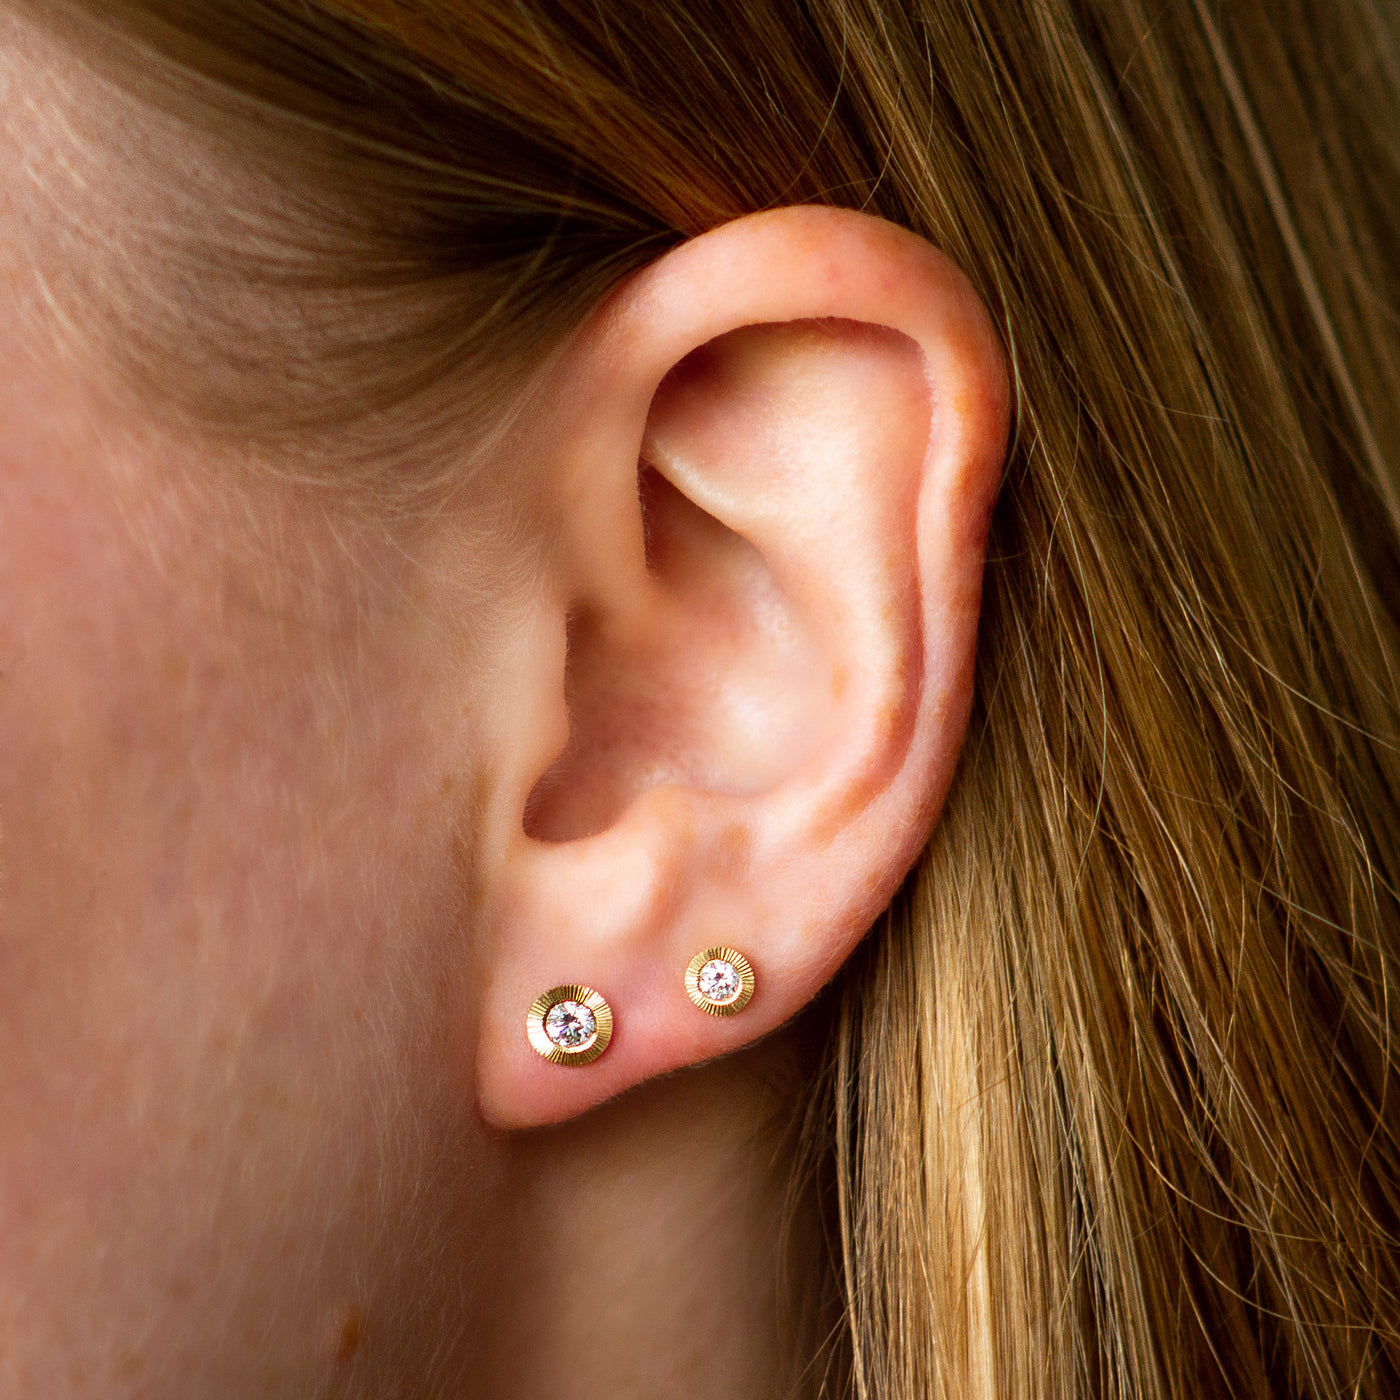 Large Aurora Diamond Stud Earring vs Medium Aurora Diamond Stud Earring in Yellow Gold on an ear